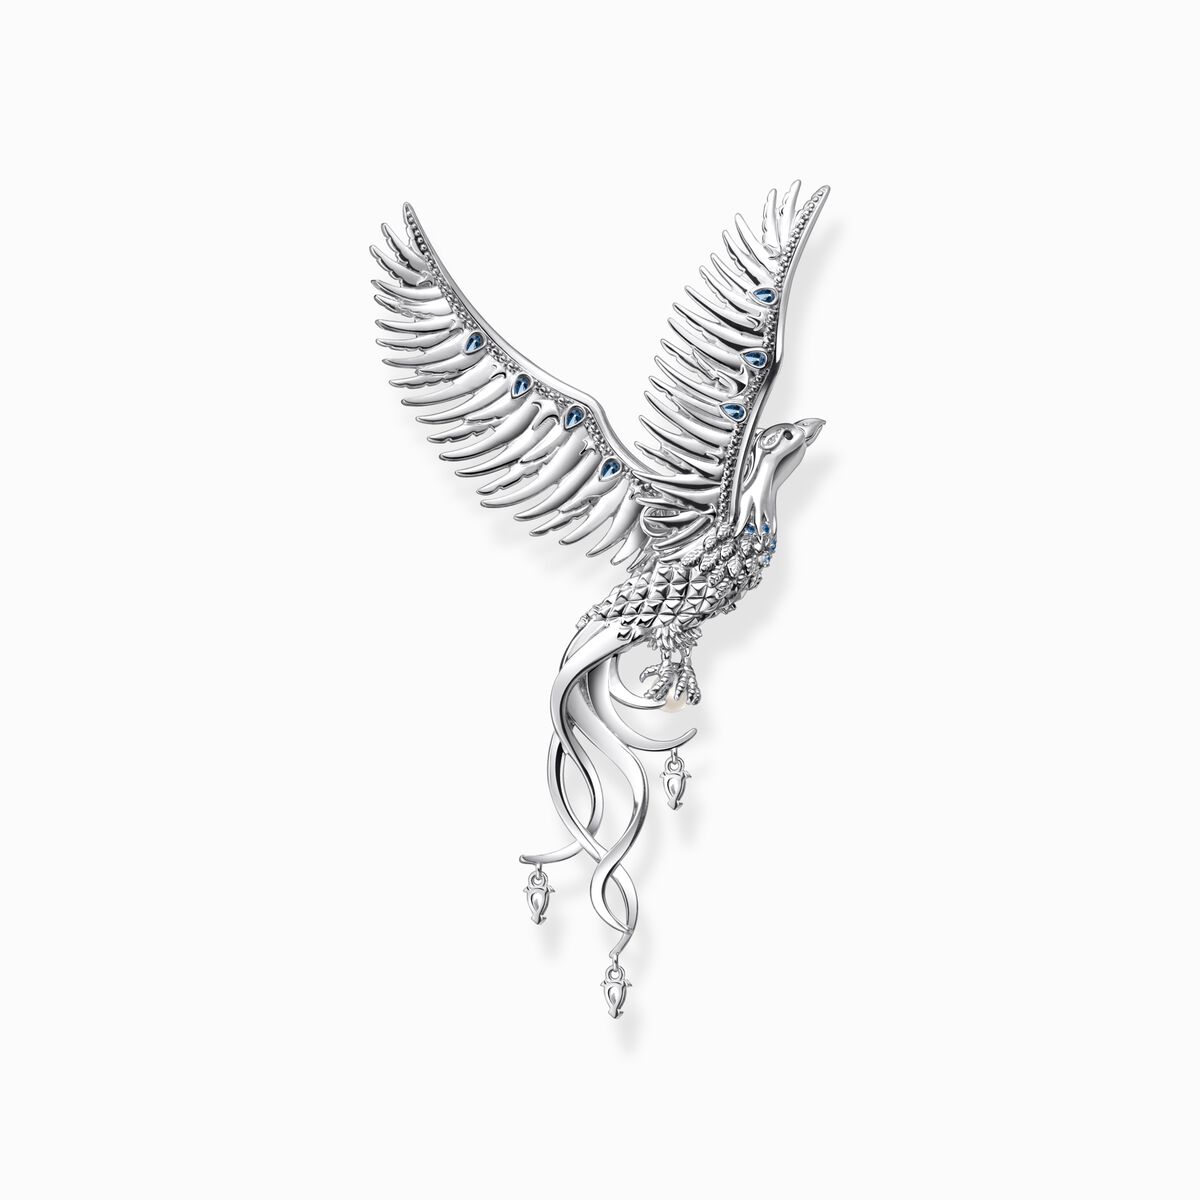 Necklace pendant: artistic phoenix, silver